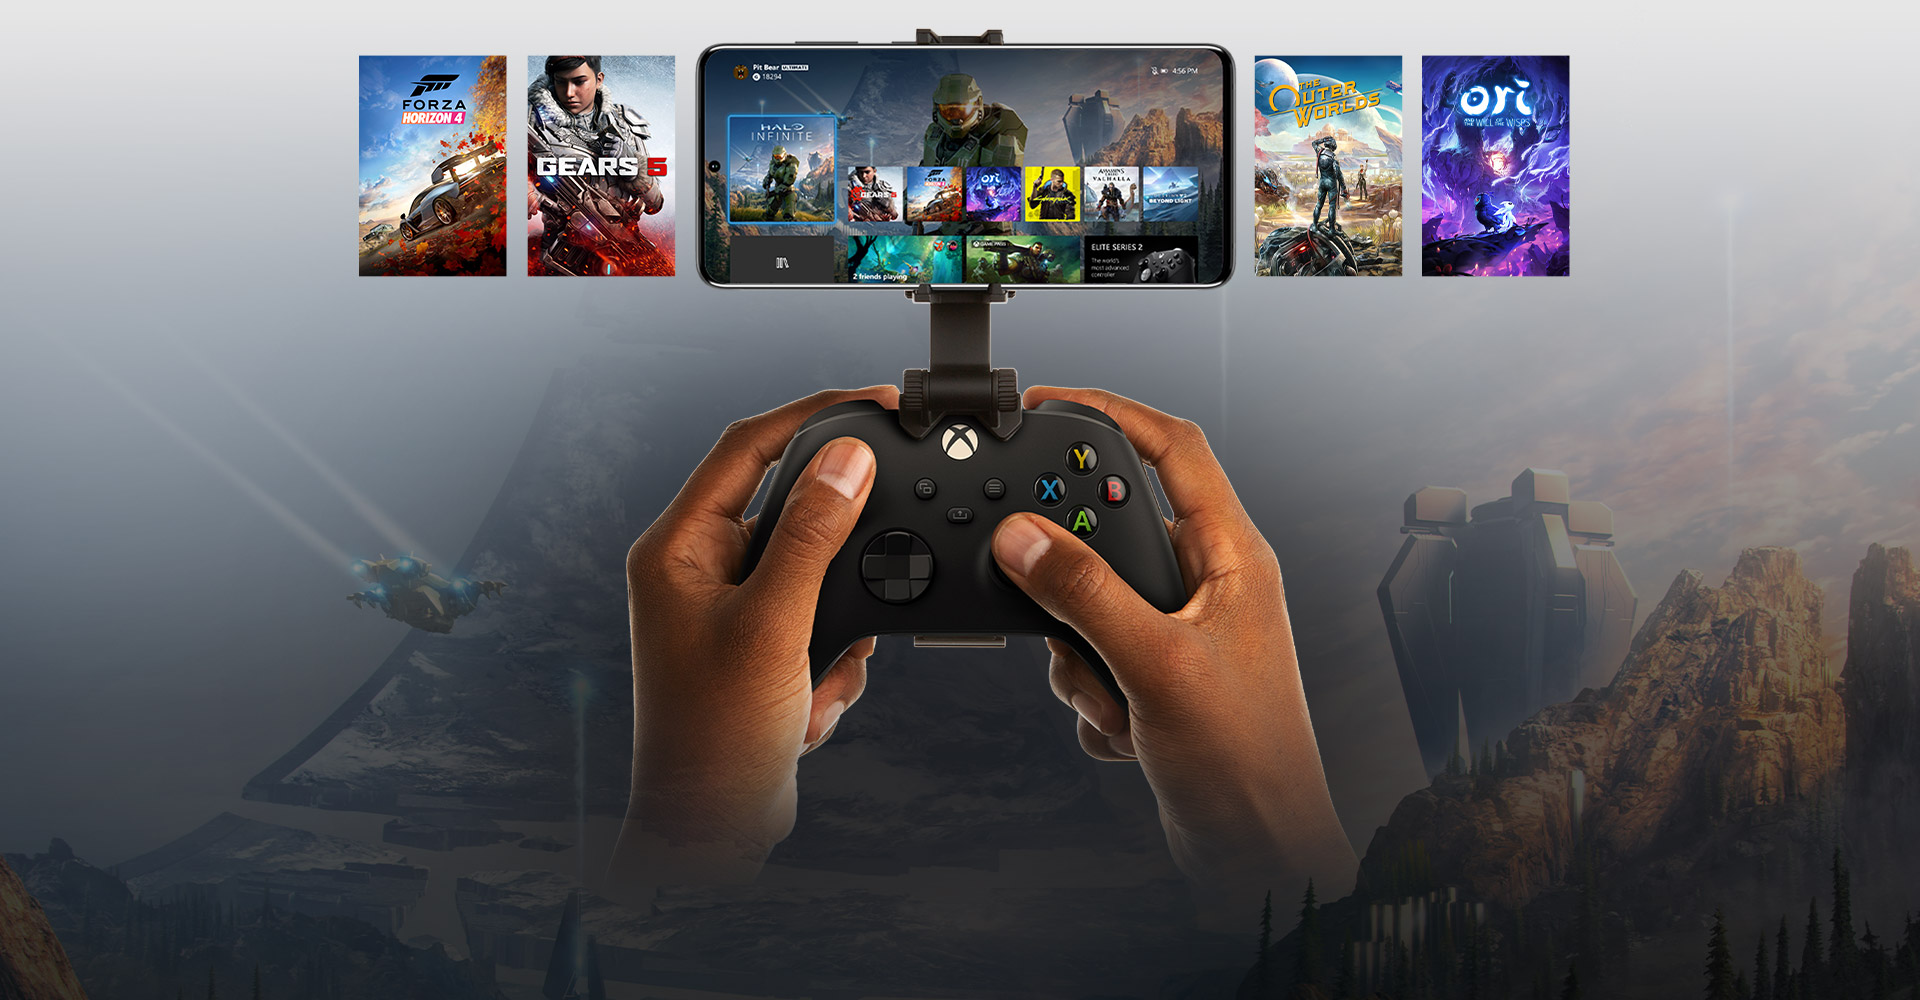 將行動裝置連接到 Xbox 控制器，其中顯示可供遊玩的遊戲選項。Halo Infinite 的世界不再侷限於手機。